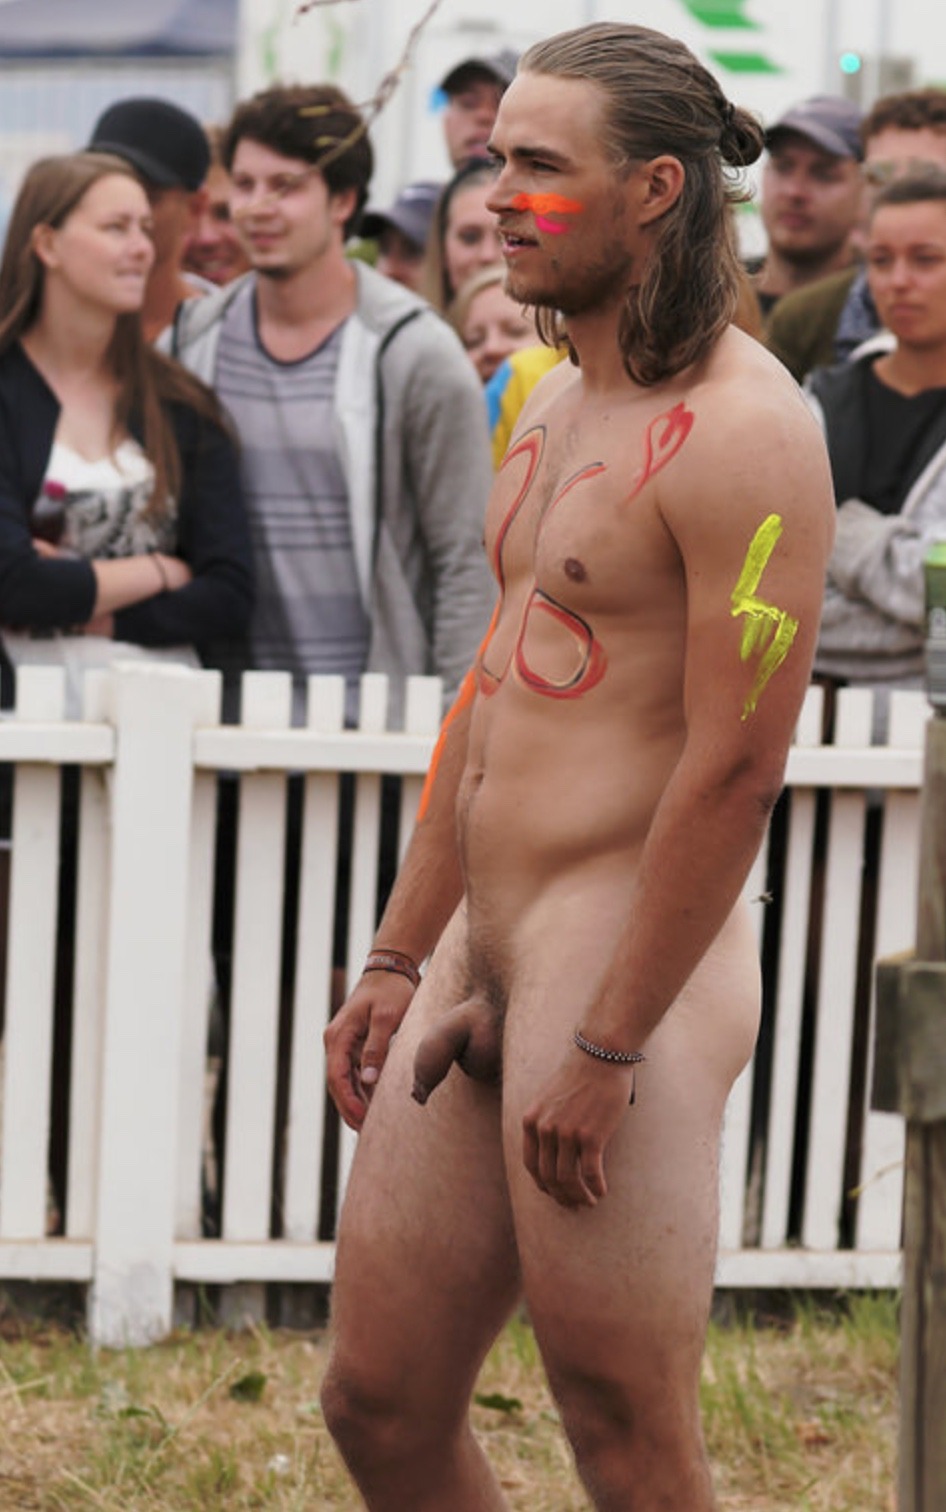 bob robs reccomend public nudity tumbler pic